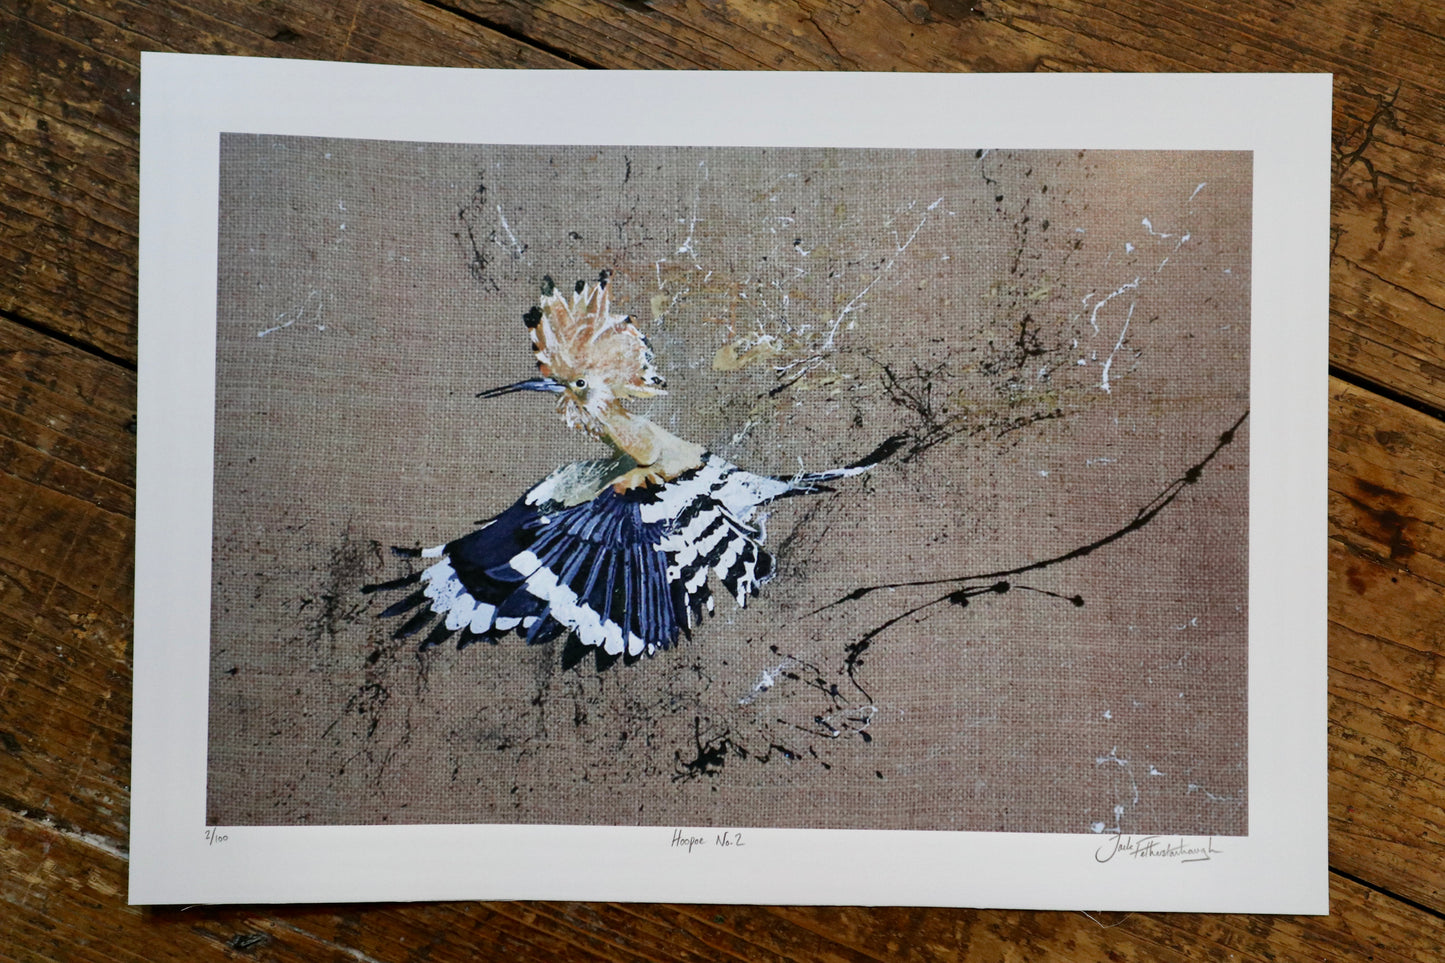 Hoopoe Bird (pair) Prints